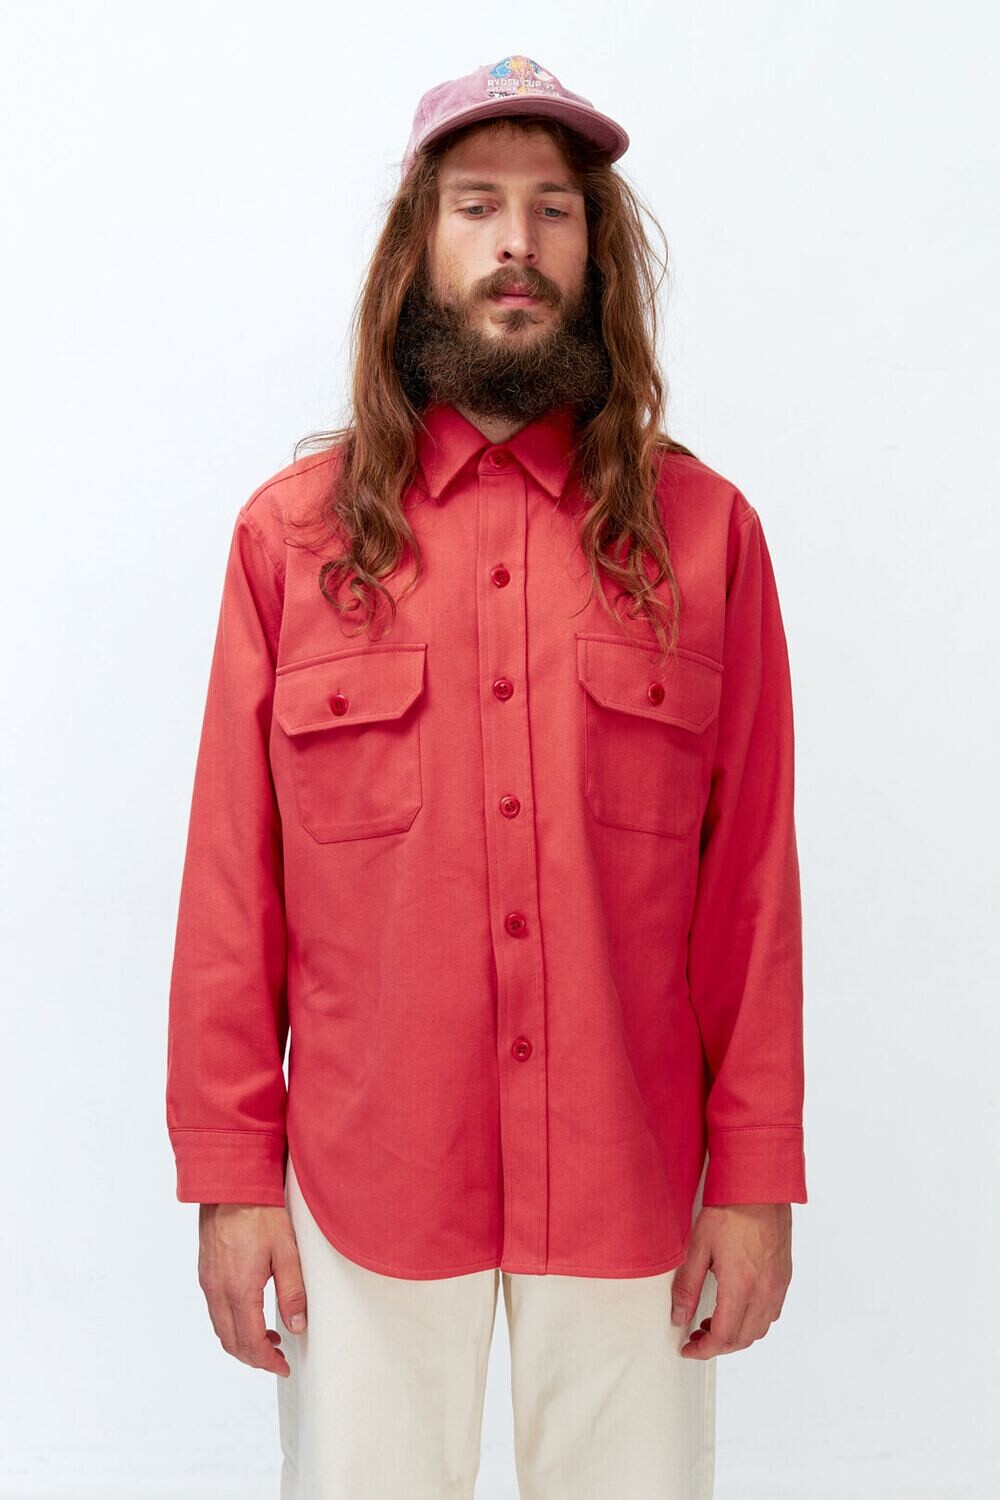 Объемная мужская рубашка из красной джинсы